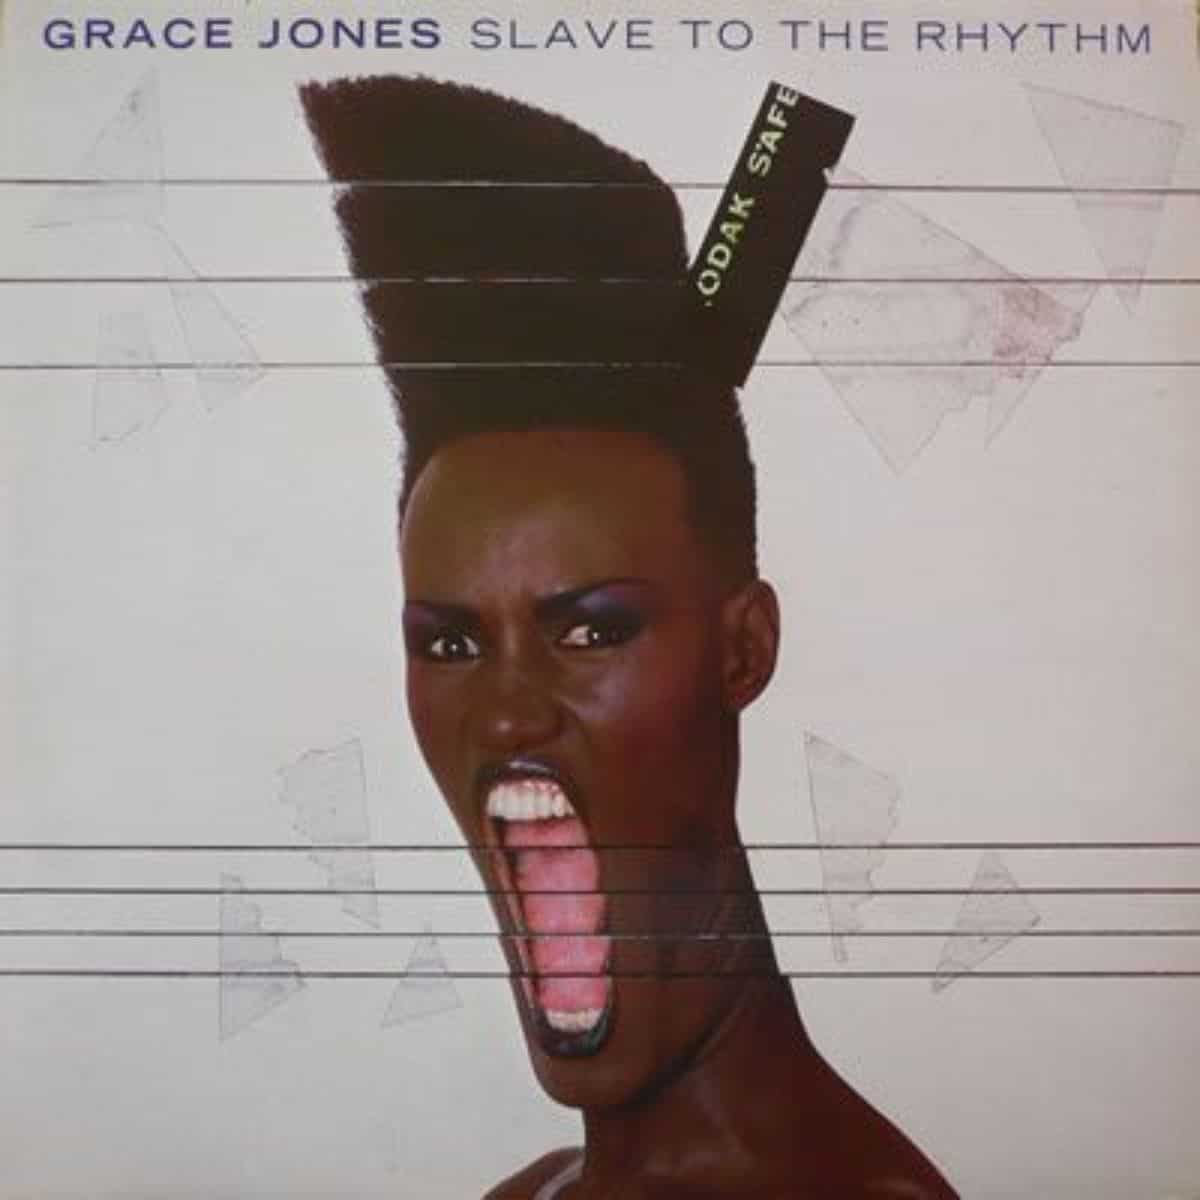 Grace Jones' album cover